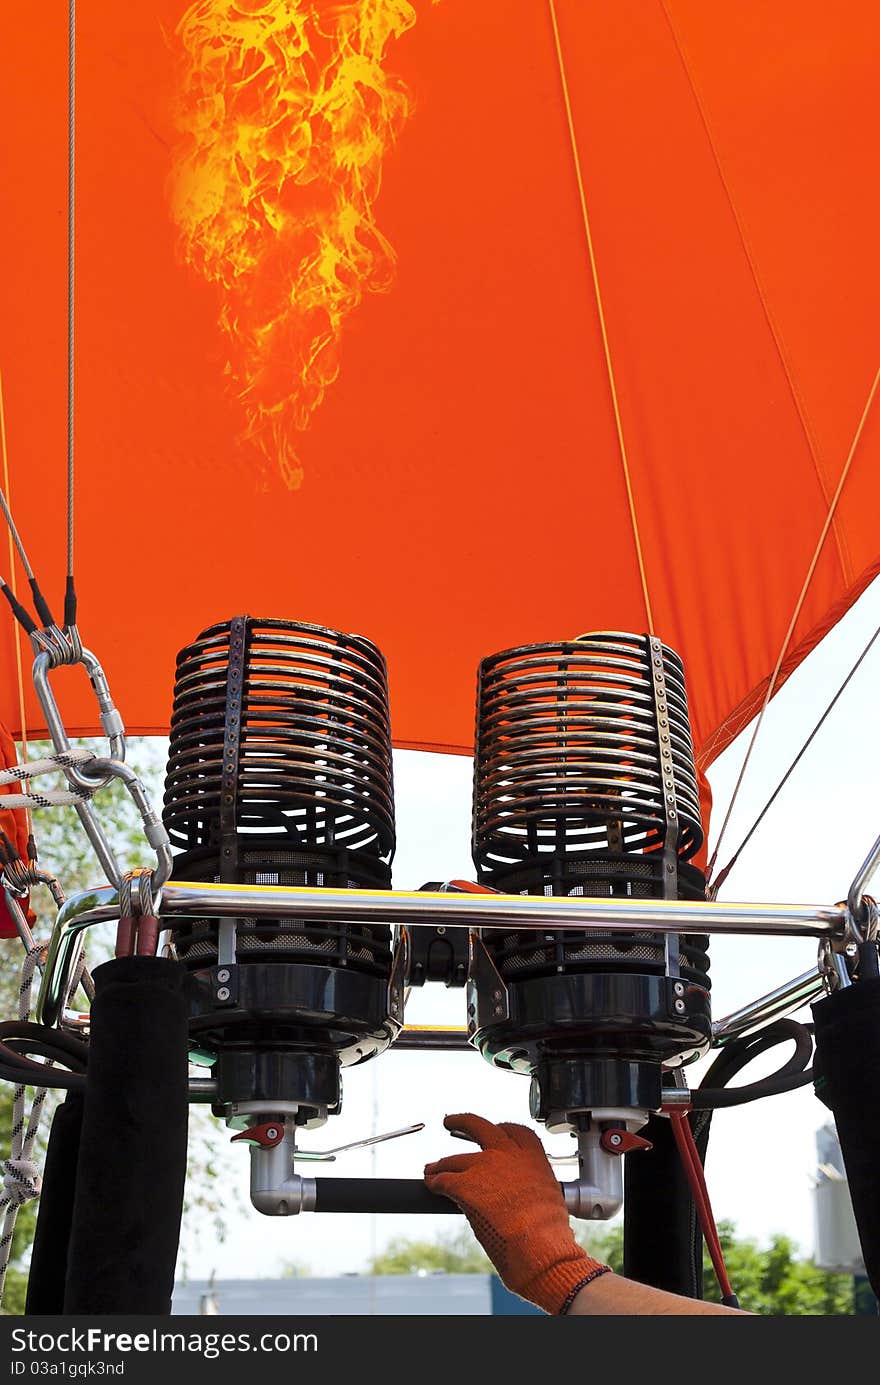 Man inflating an orange hot air balloon